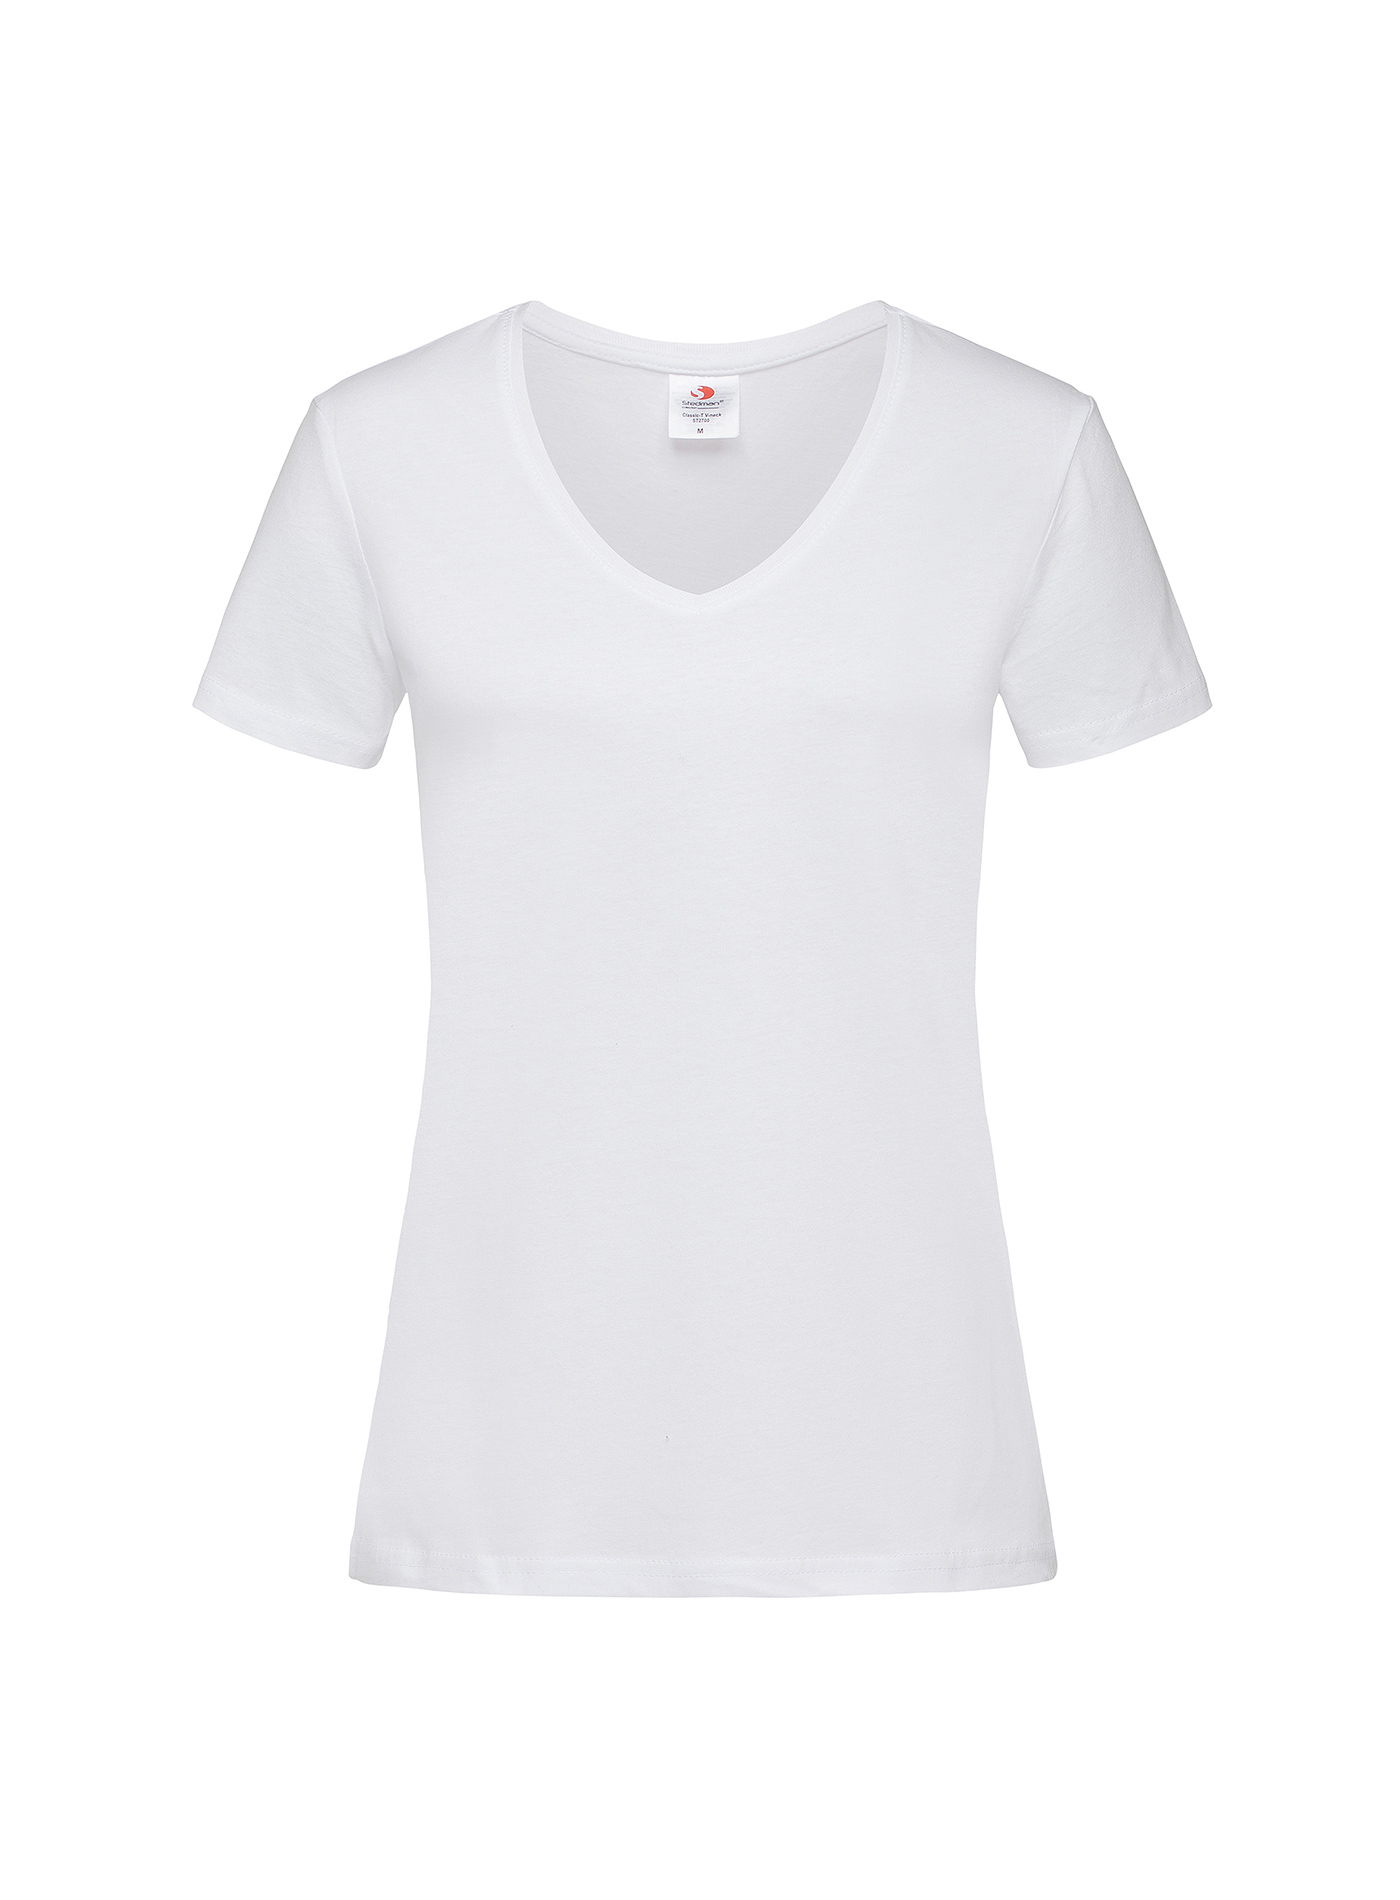 Dámské tričko s V-výstřihem Stedman - Bílá XL